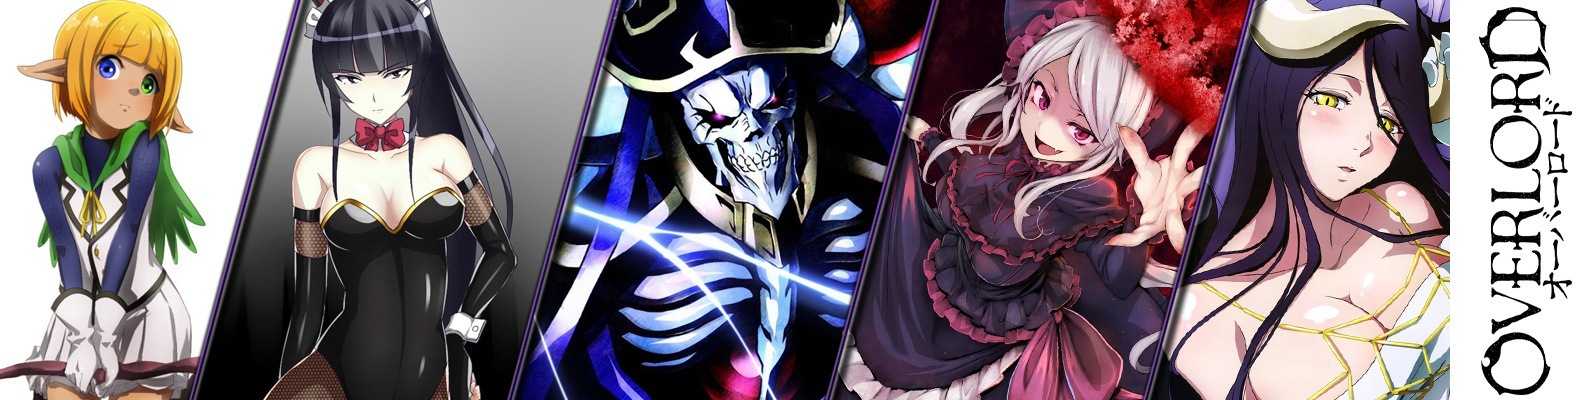 Overlord: 15 сильнейших аниме-персонажей в рейтинге!